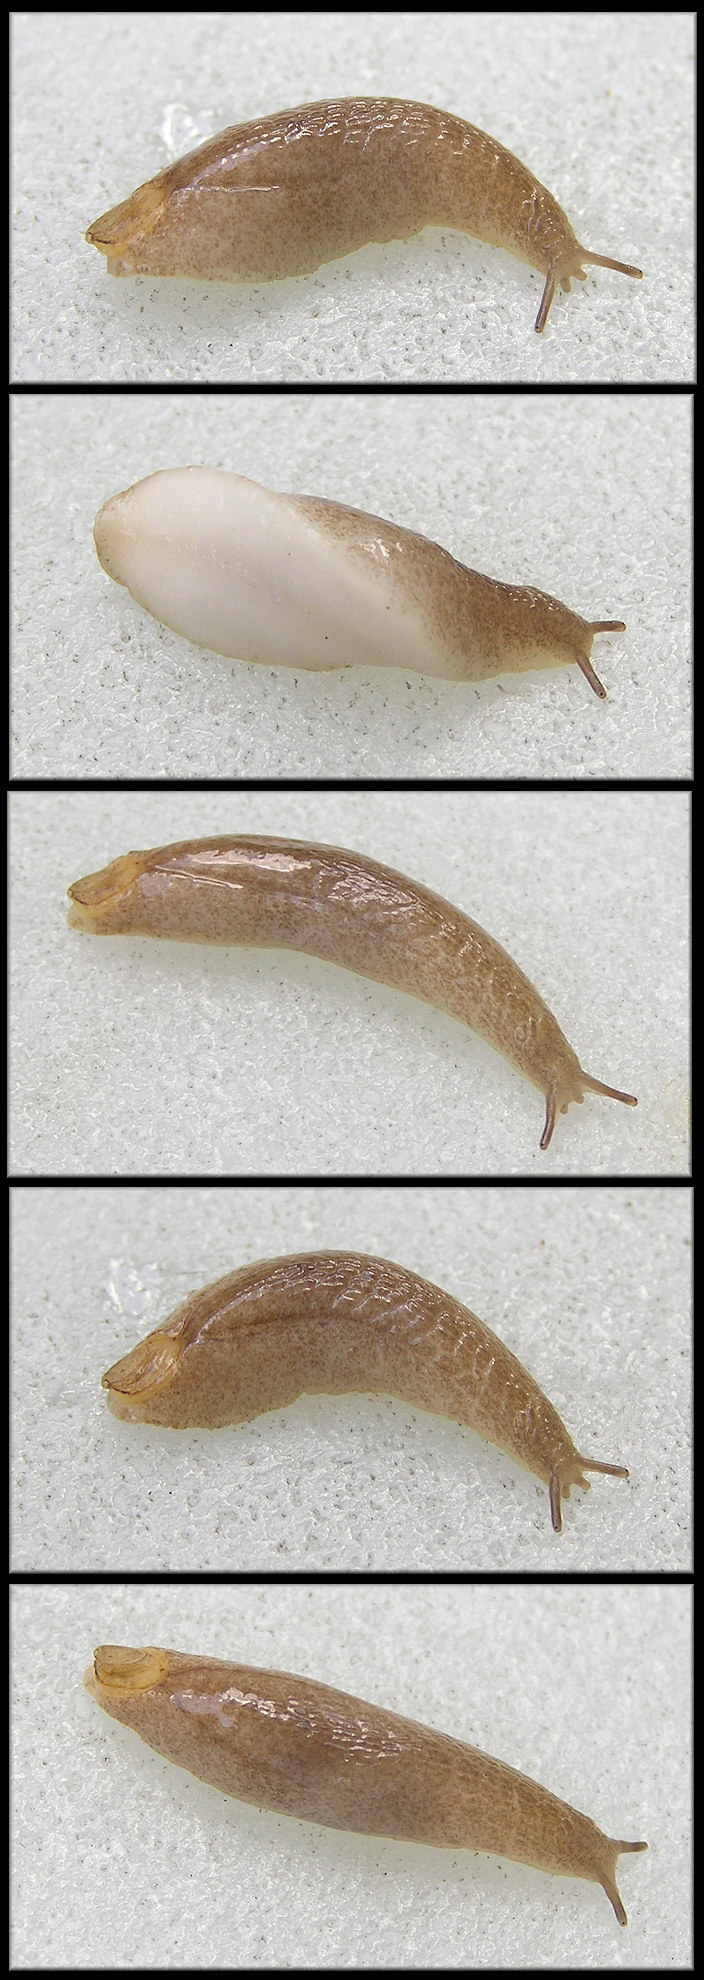 Testacella haliotidea (Draparnaud, 1801) "Shelled Slug" Juvenile